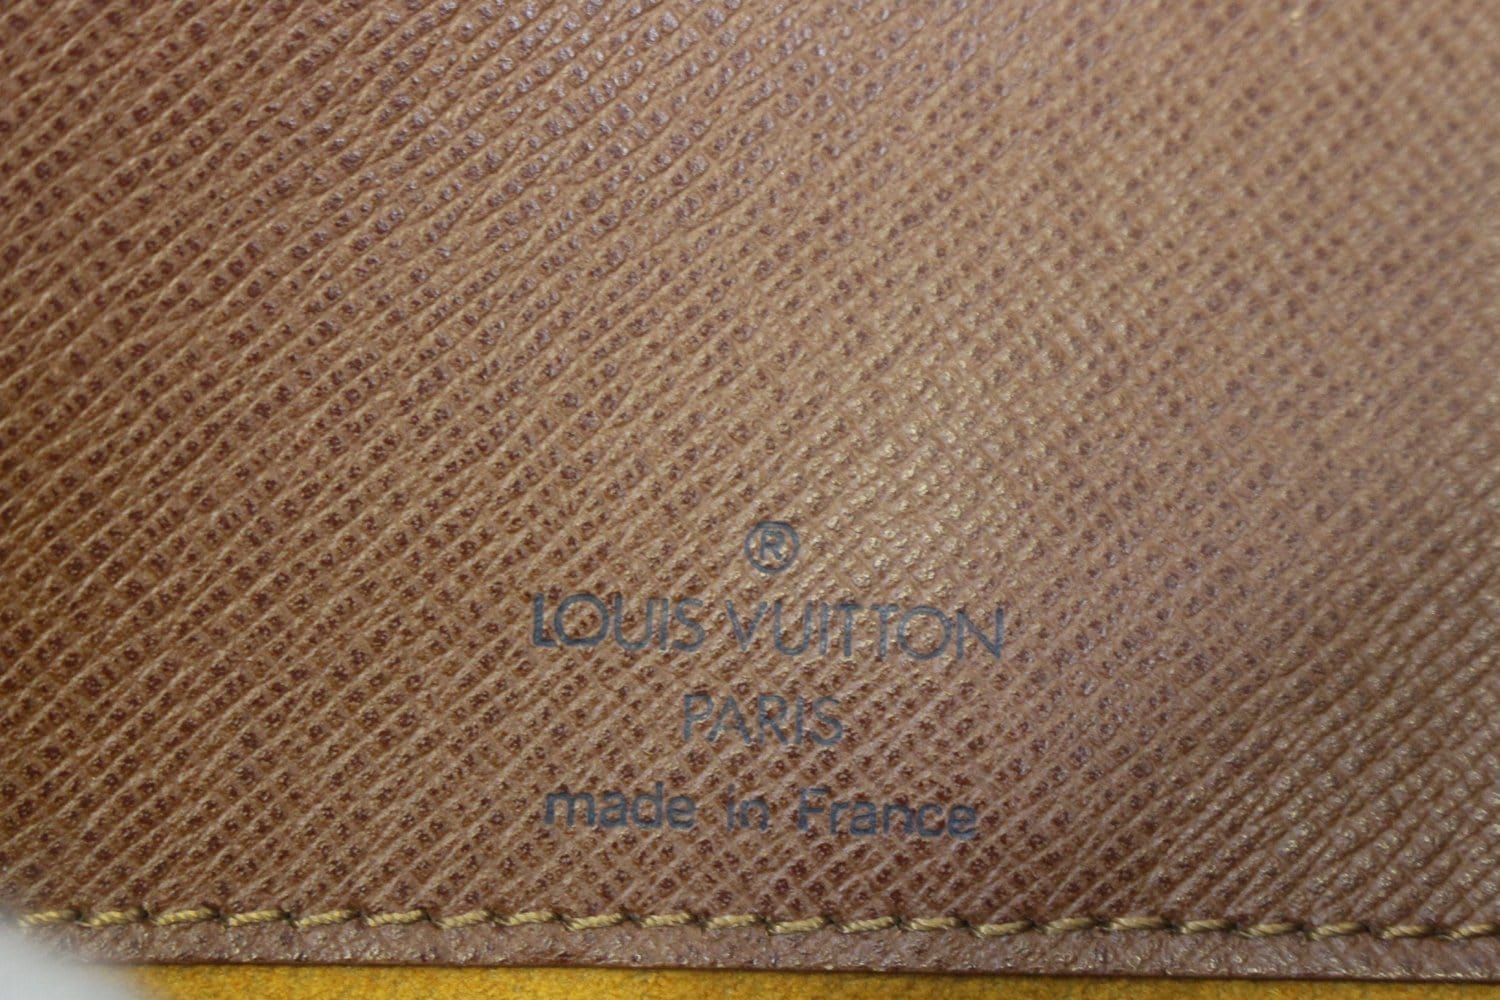 Louis Vuitton XL Monogram  GM Messenger Bag 113lv50 – Bagriculture